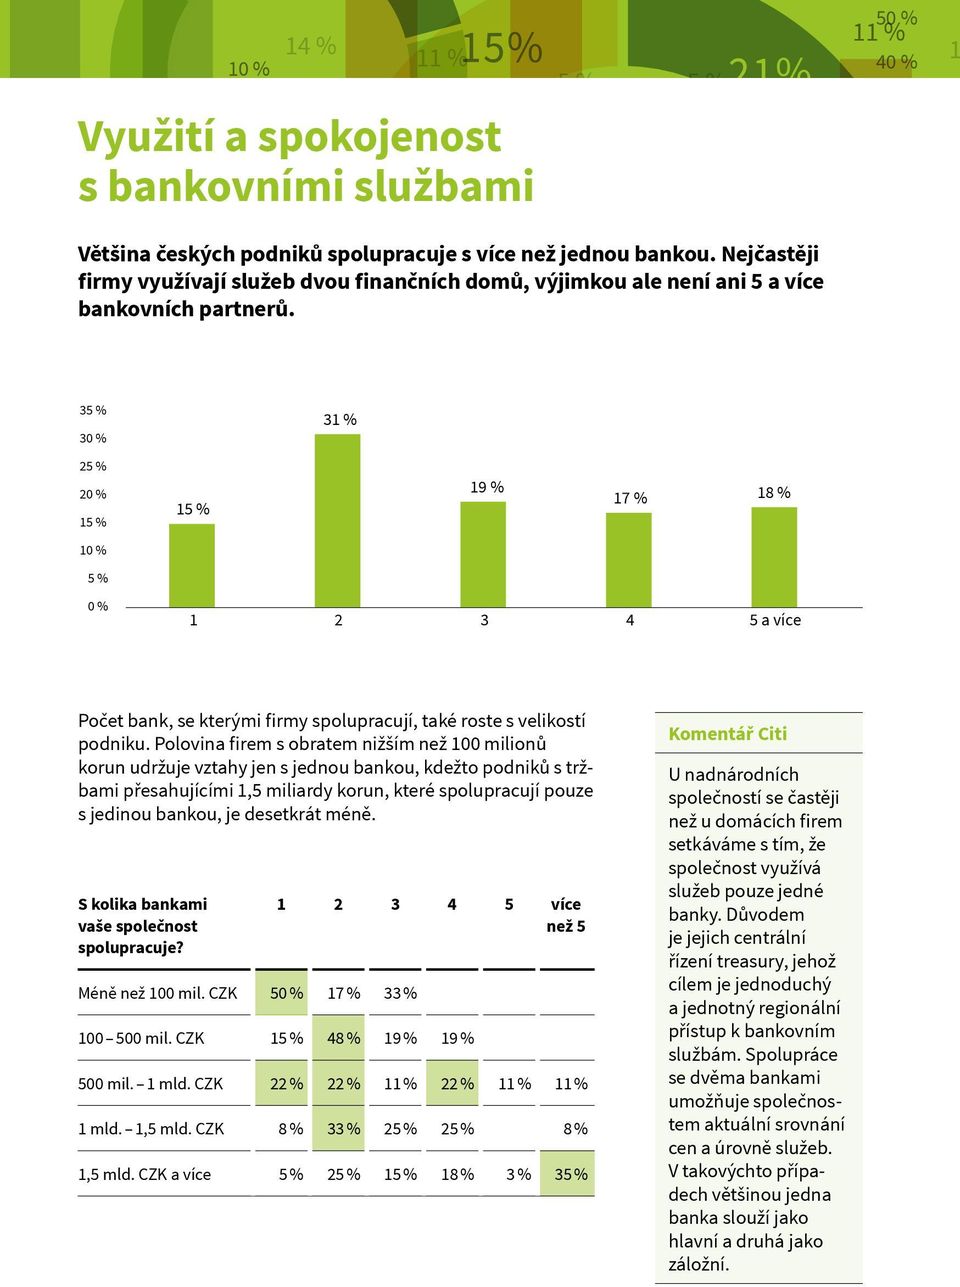 Spíše omentář ano Citi U nadnárodních Spíše společností ne se častěji 5 EUR USD PLN GBP RON HUF RUB J 3 3 2 2 3 % 9 % 7 % 8 % 2 3 4 5 a více Počet bank, se kterými firmy spolupracují, také roste s